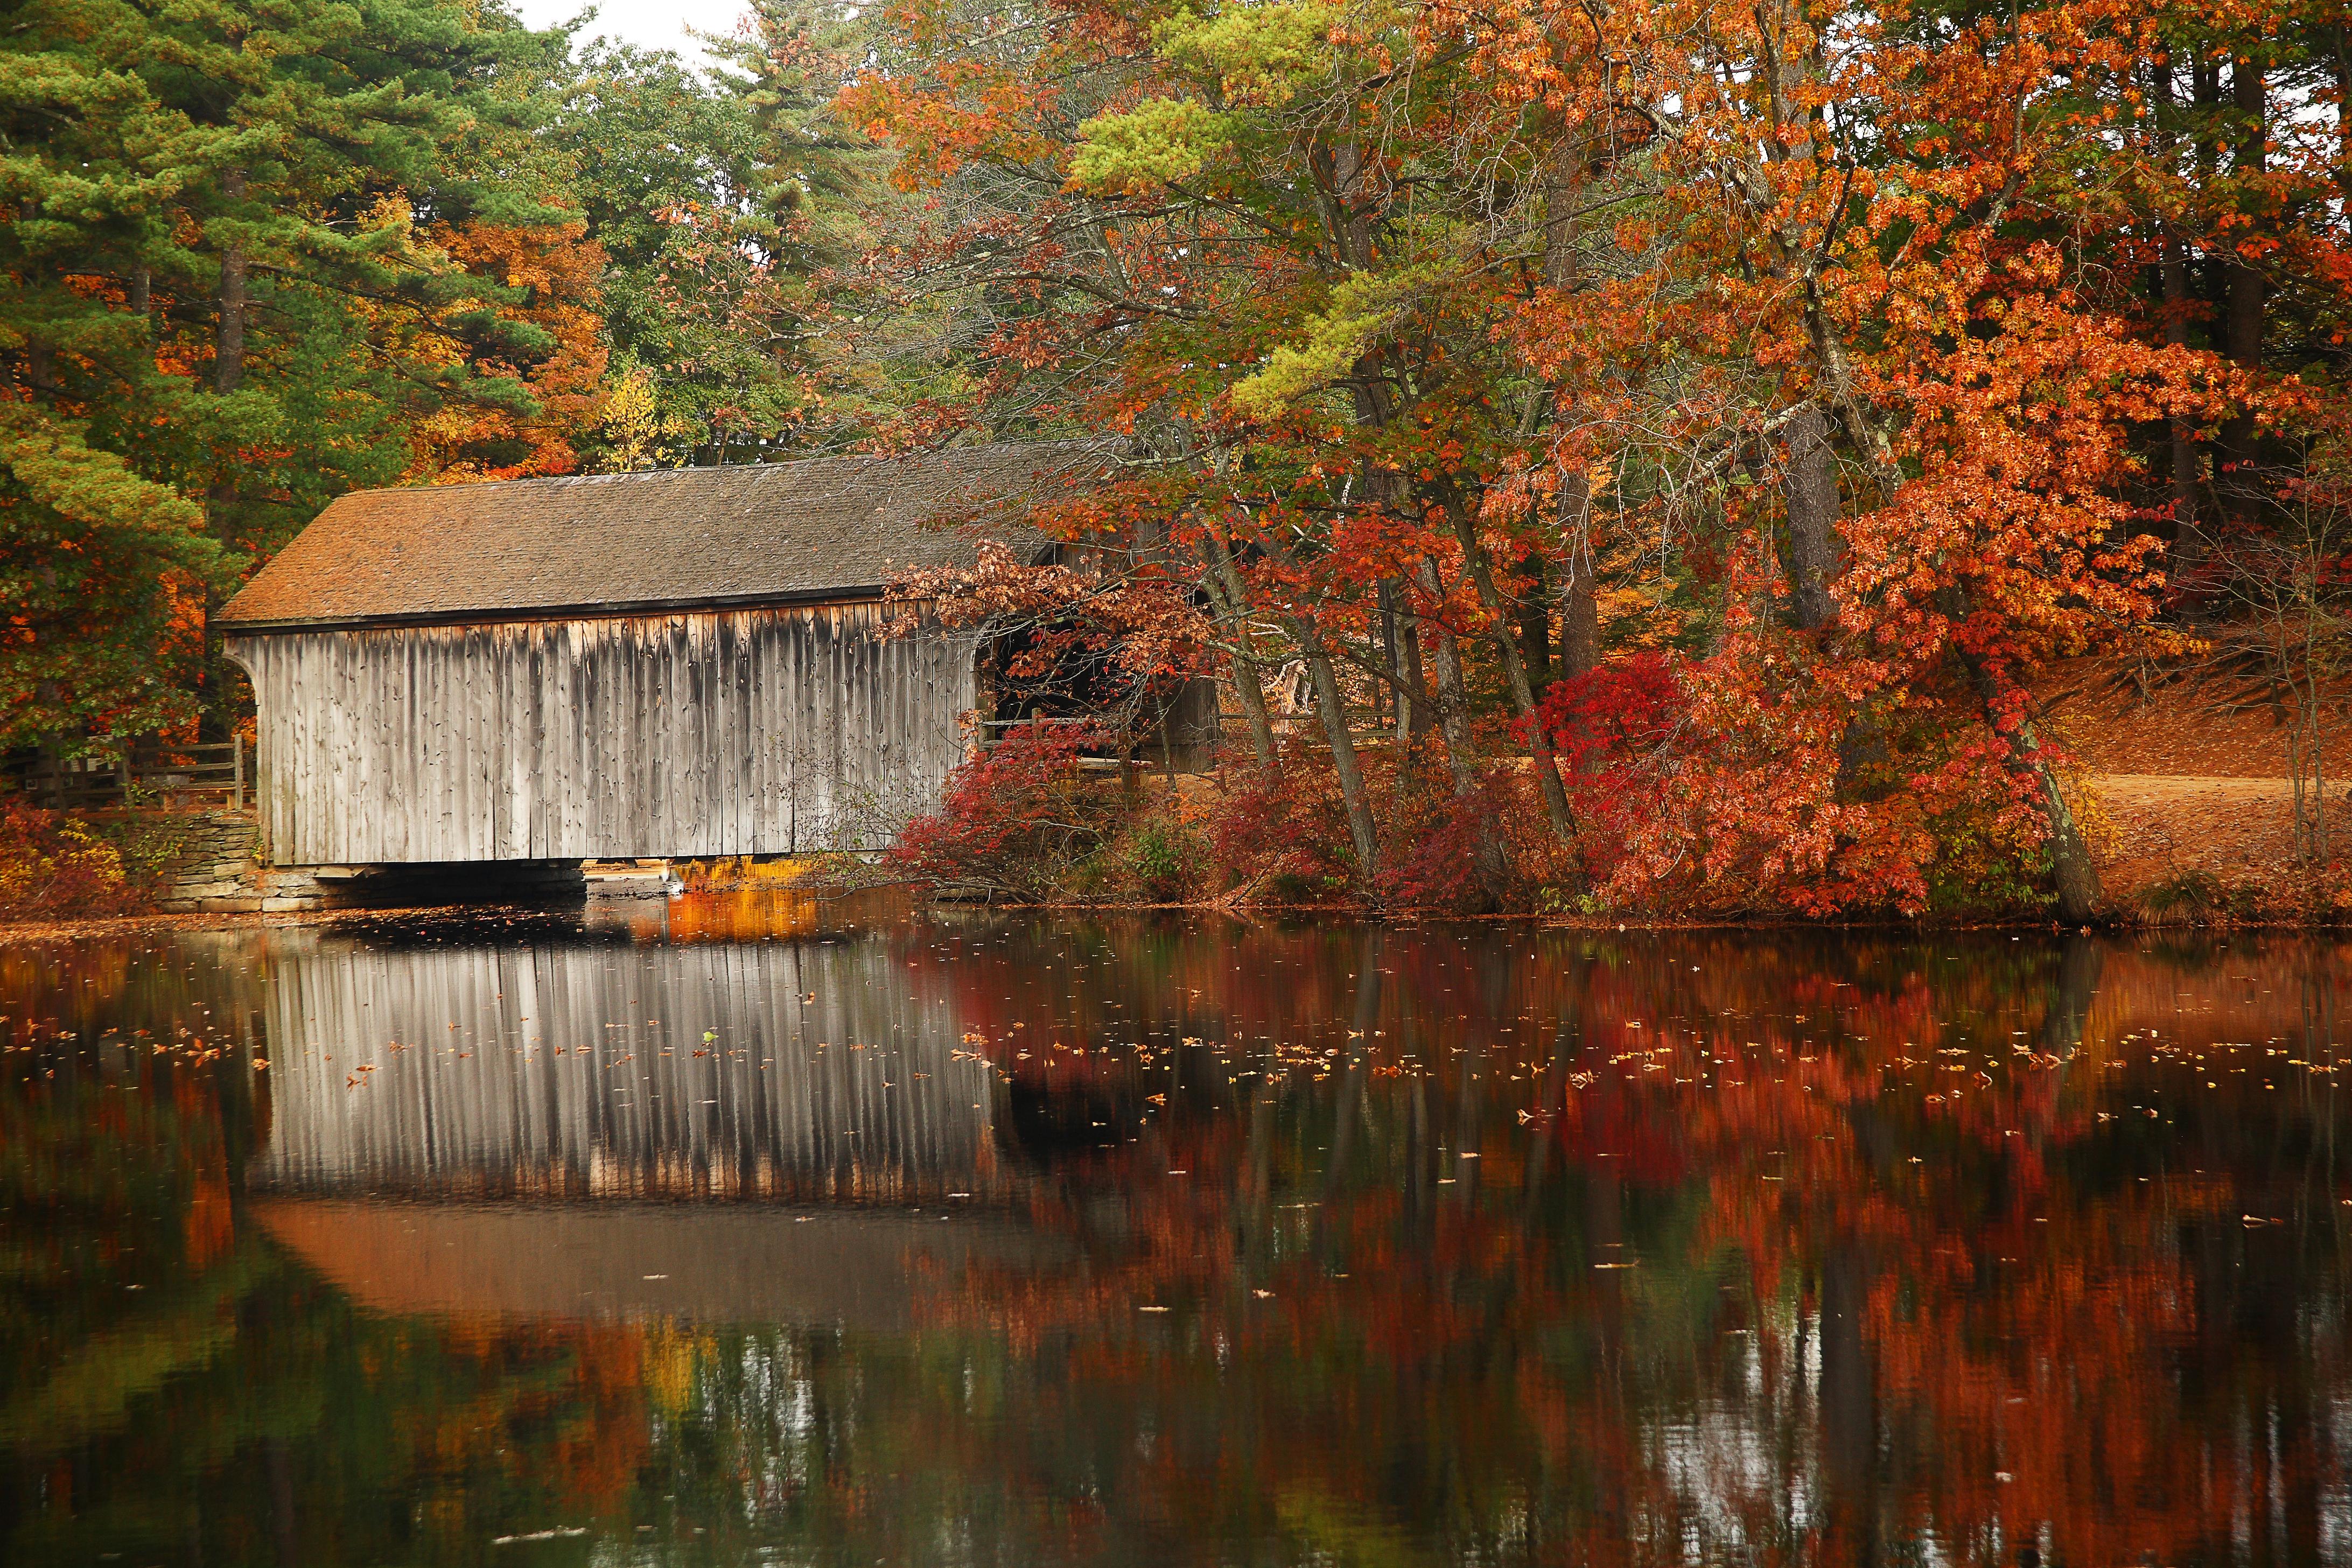 A photo of a covered bridge in Massachusetts amid fall foliage